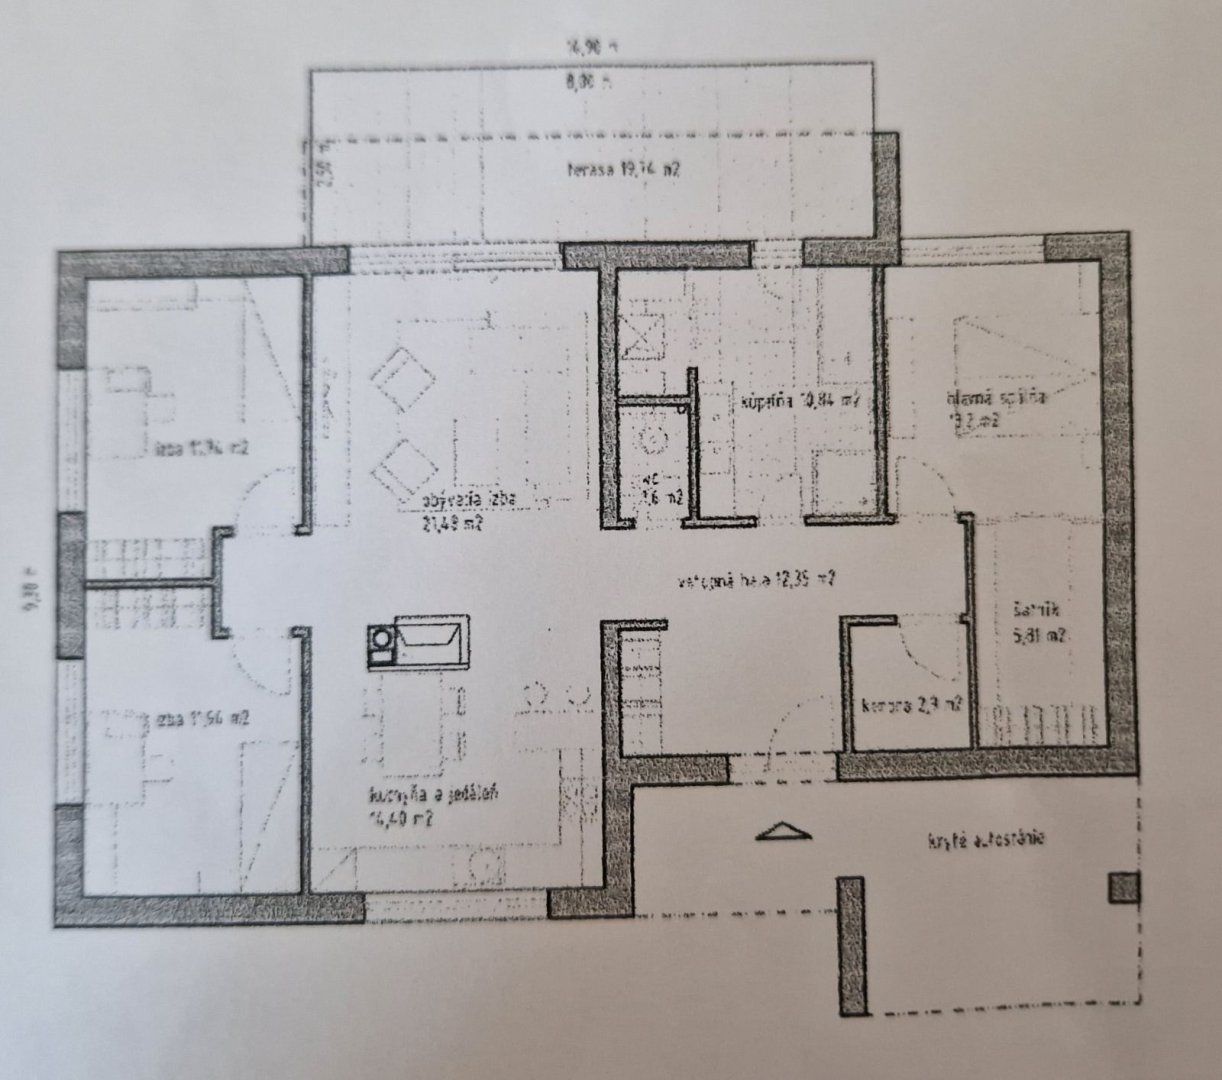 NOVOSTAVBA!!! Moderný nízkoenergetický 4 izbový rodinný dom vysokej kvality v nadštandardnej výbave v Dolnom Bare